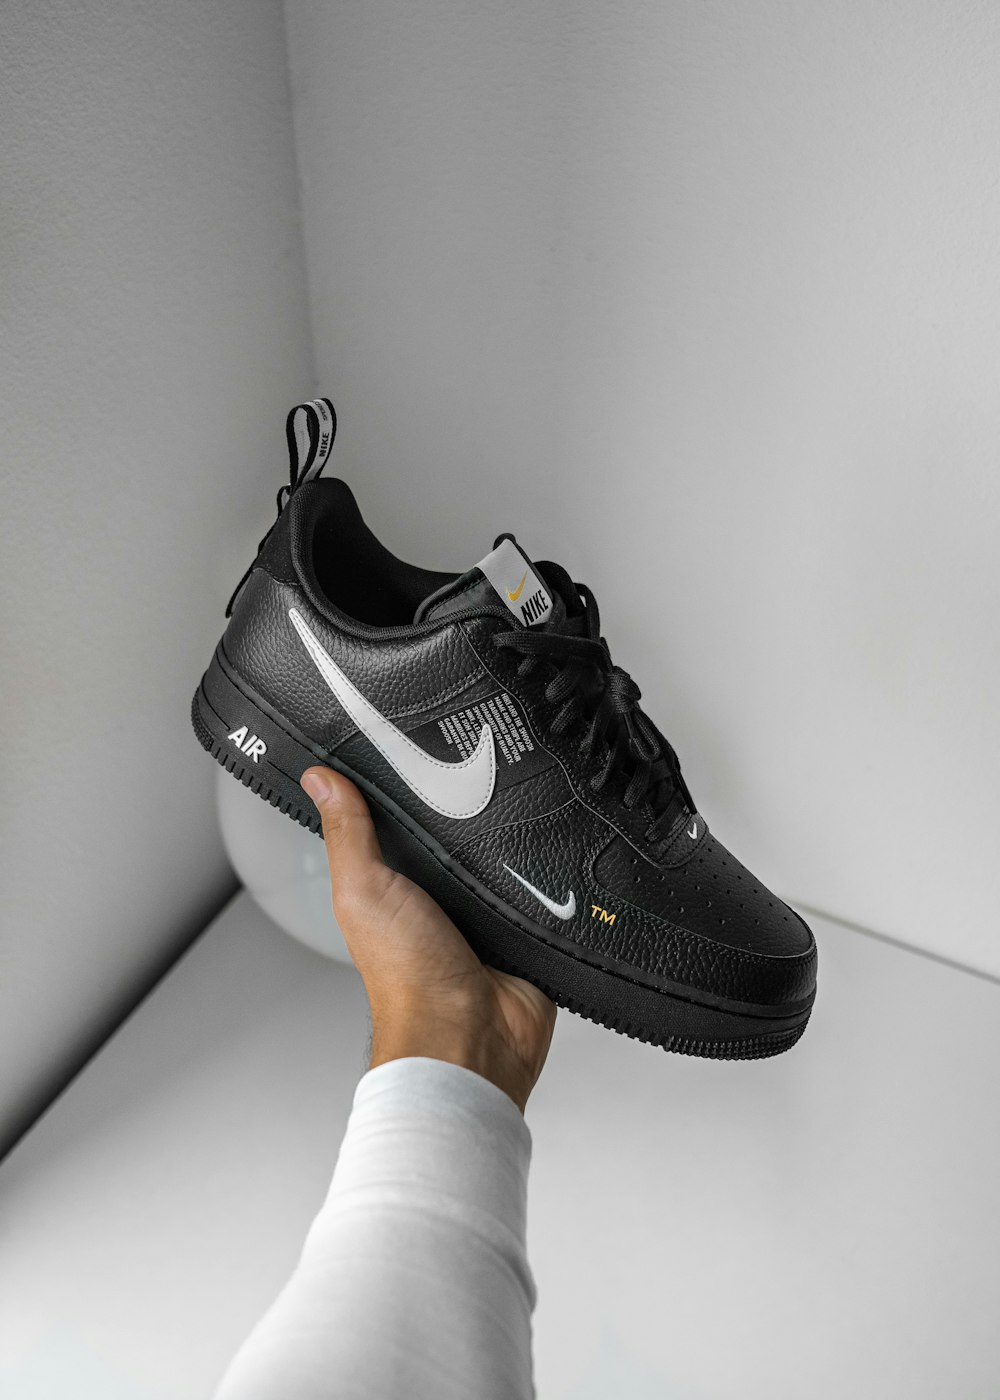 Nike Air Force 1 Sneaker in Schwarz und Weiß